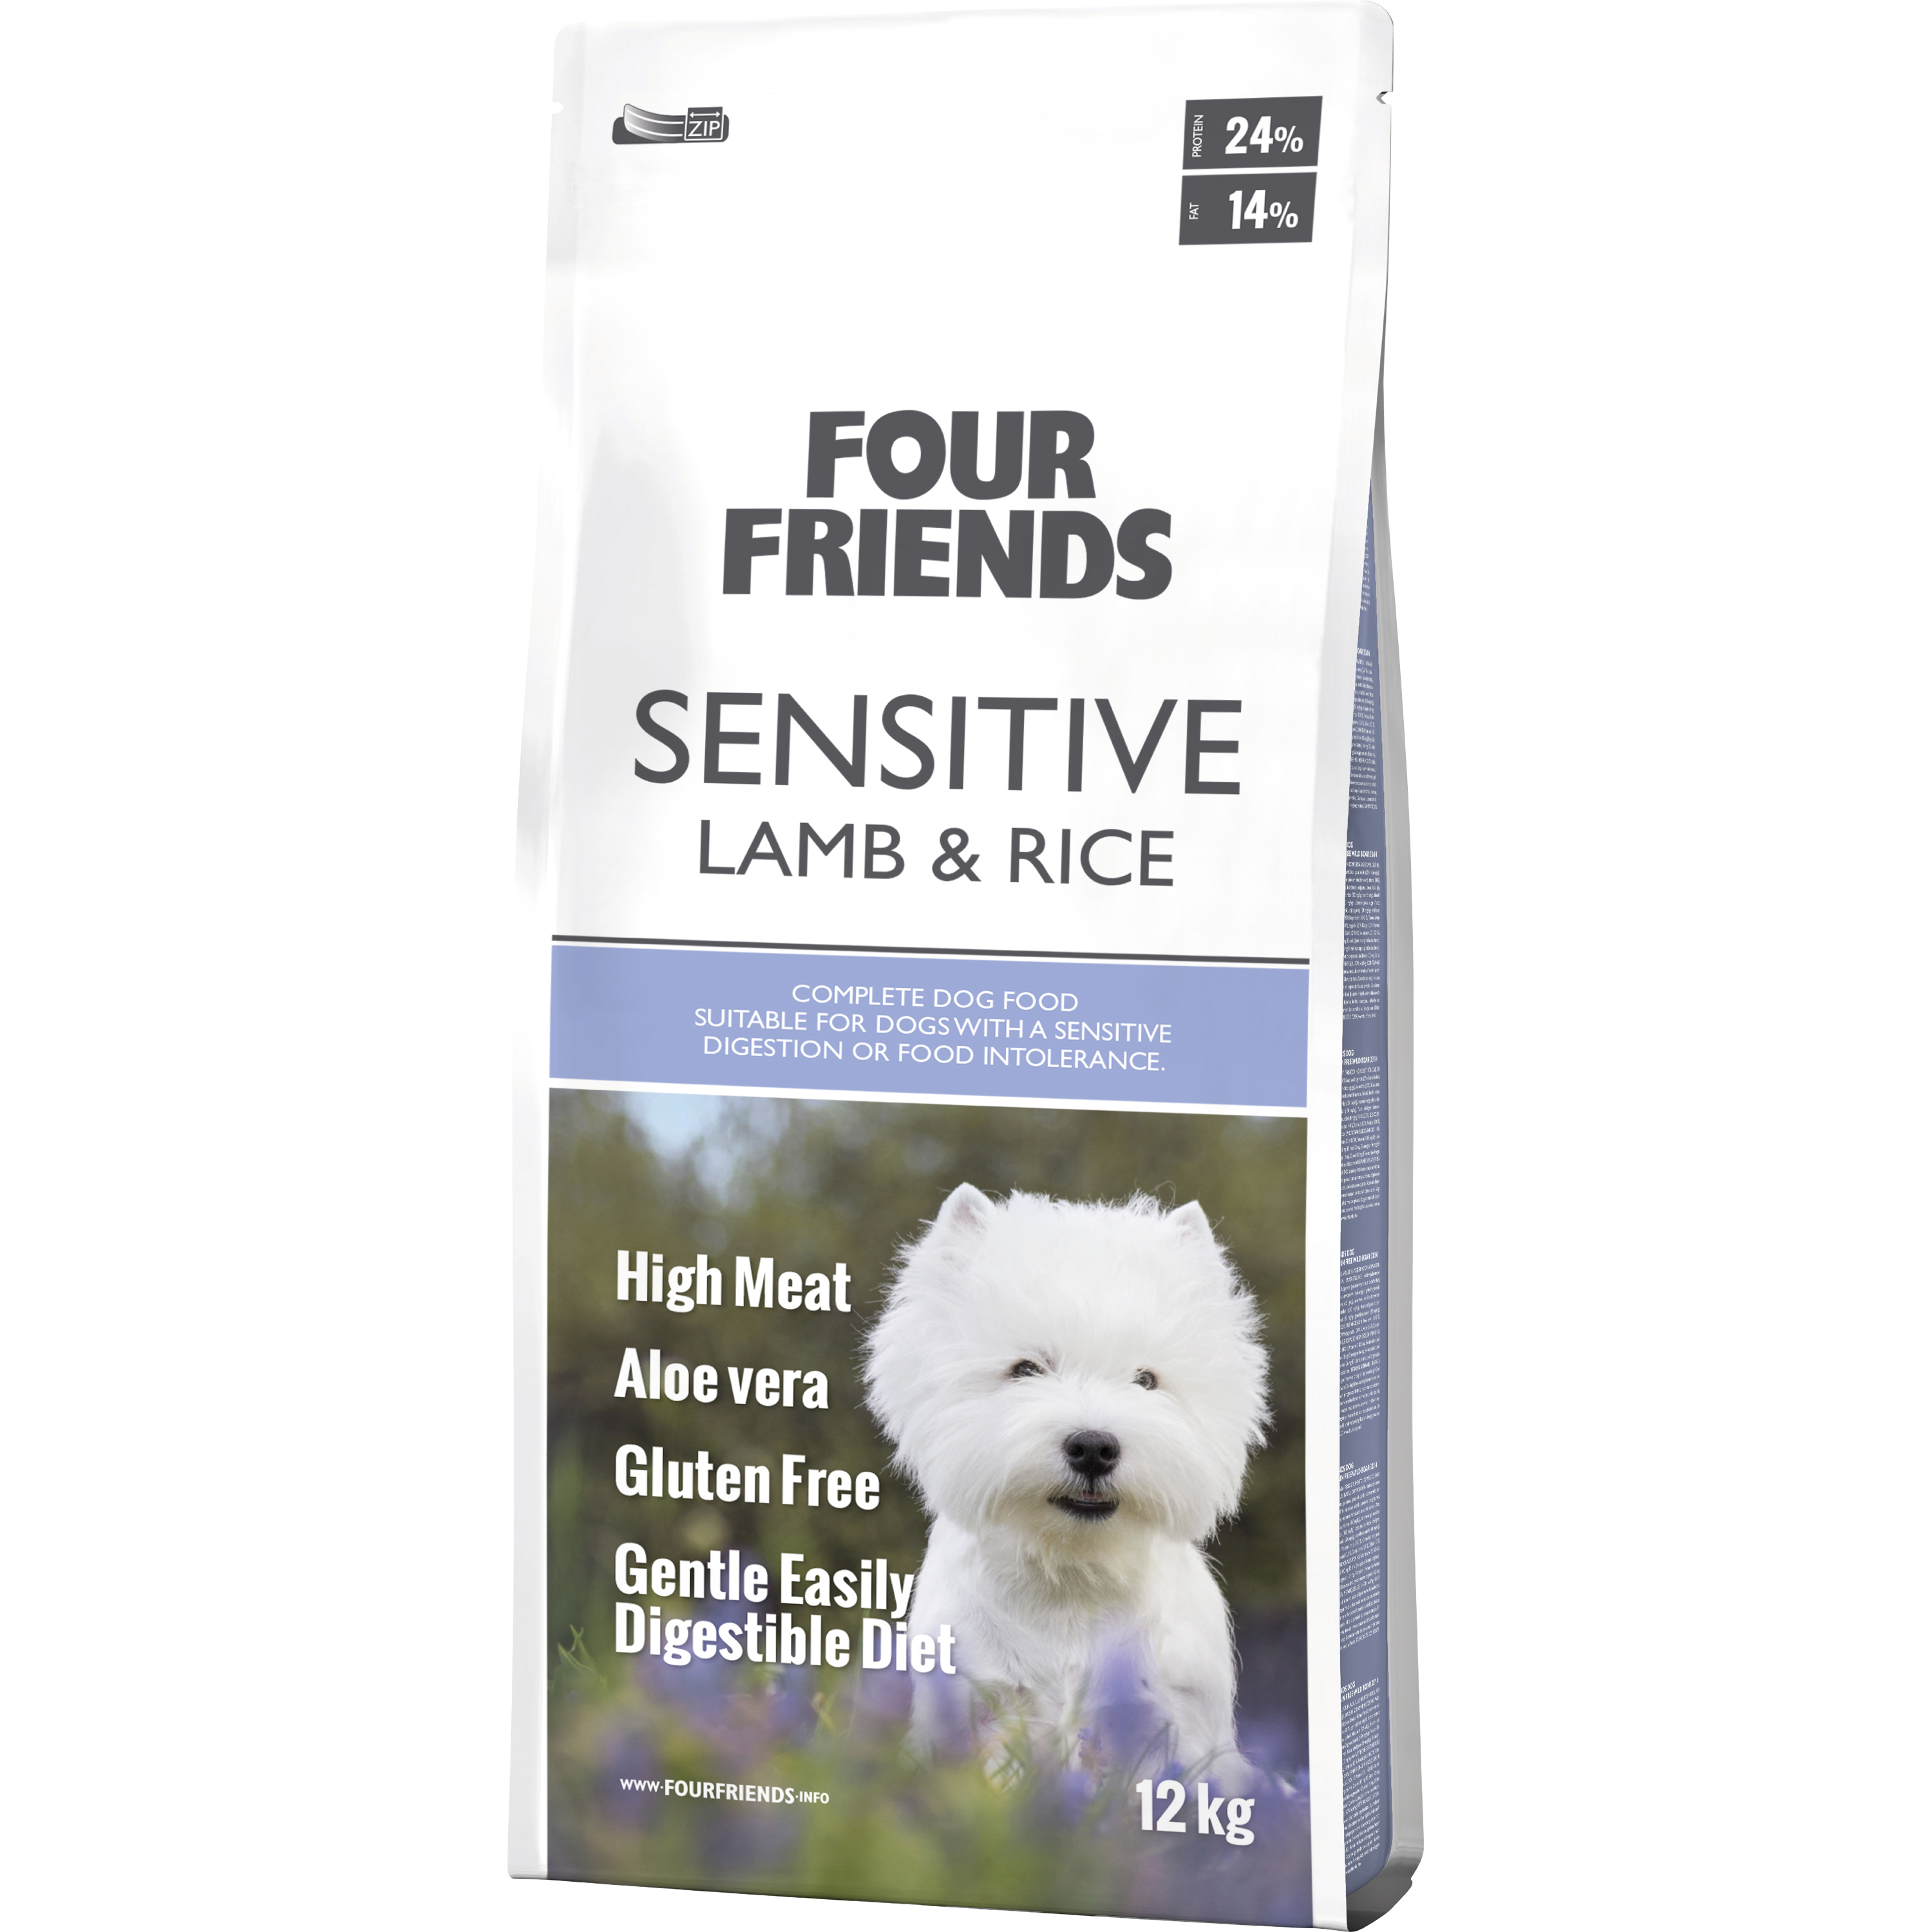 Hundfoder Four Friends Sensitive Low Calorie Lamb & Rice 12kg